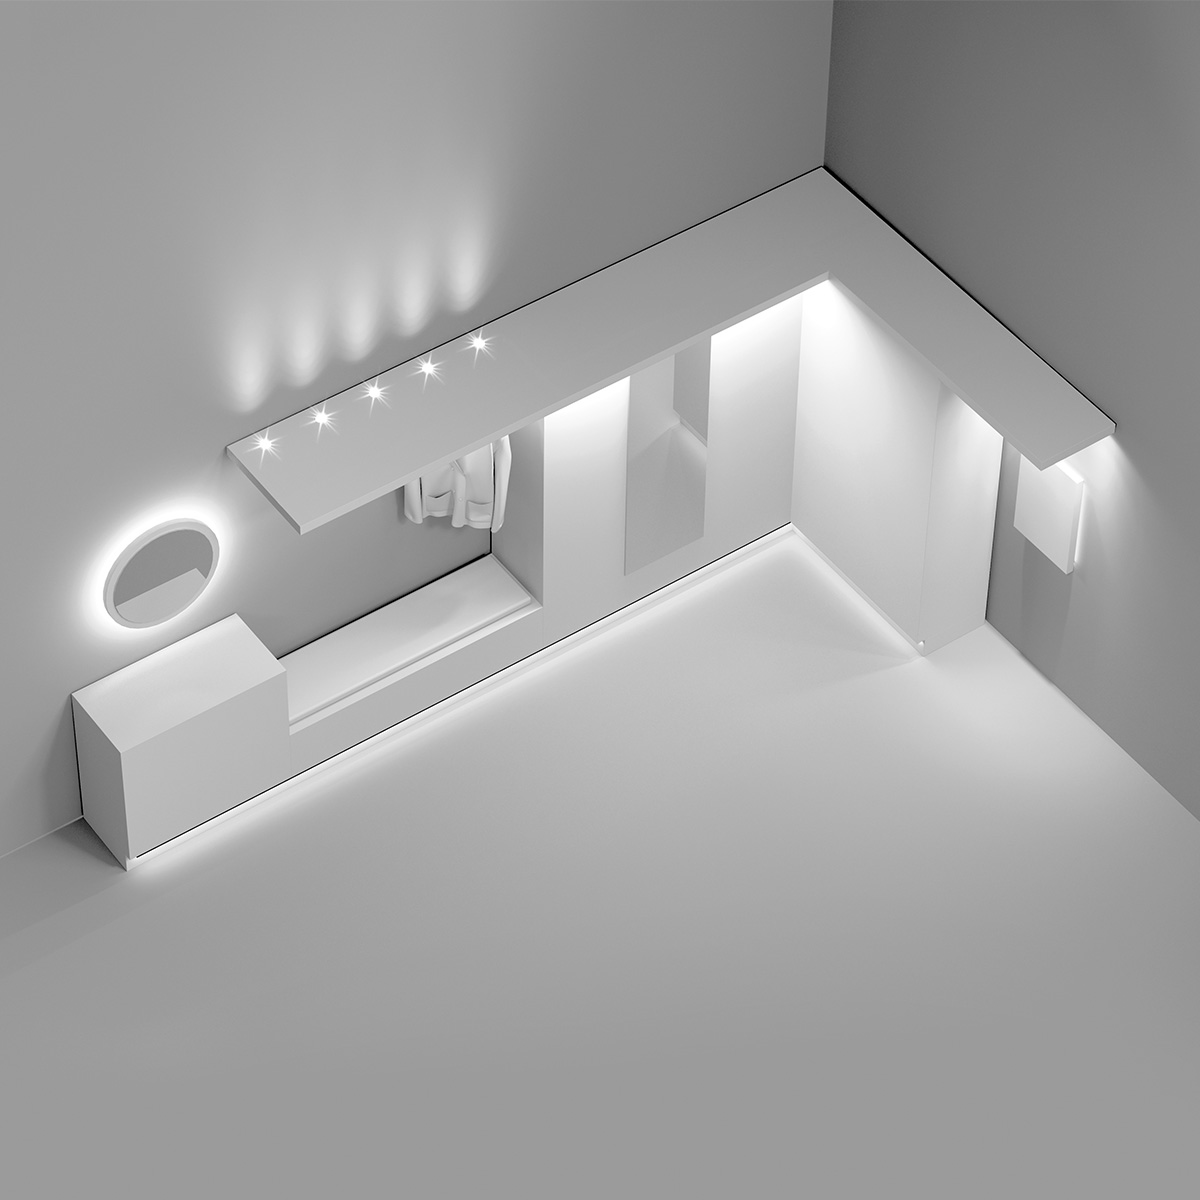 Sistemi di illuminazione per mobili ed ambienti